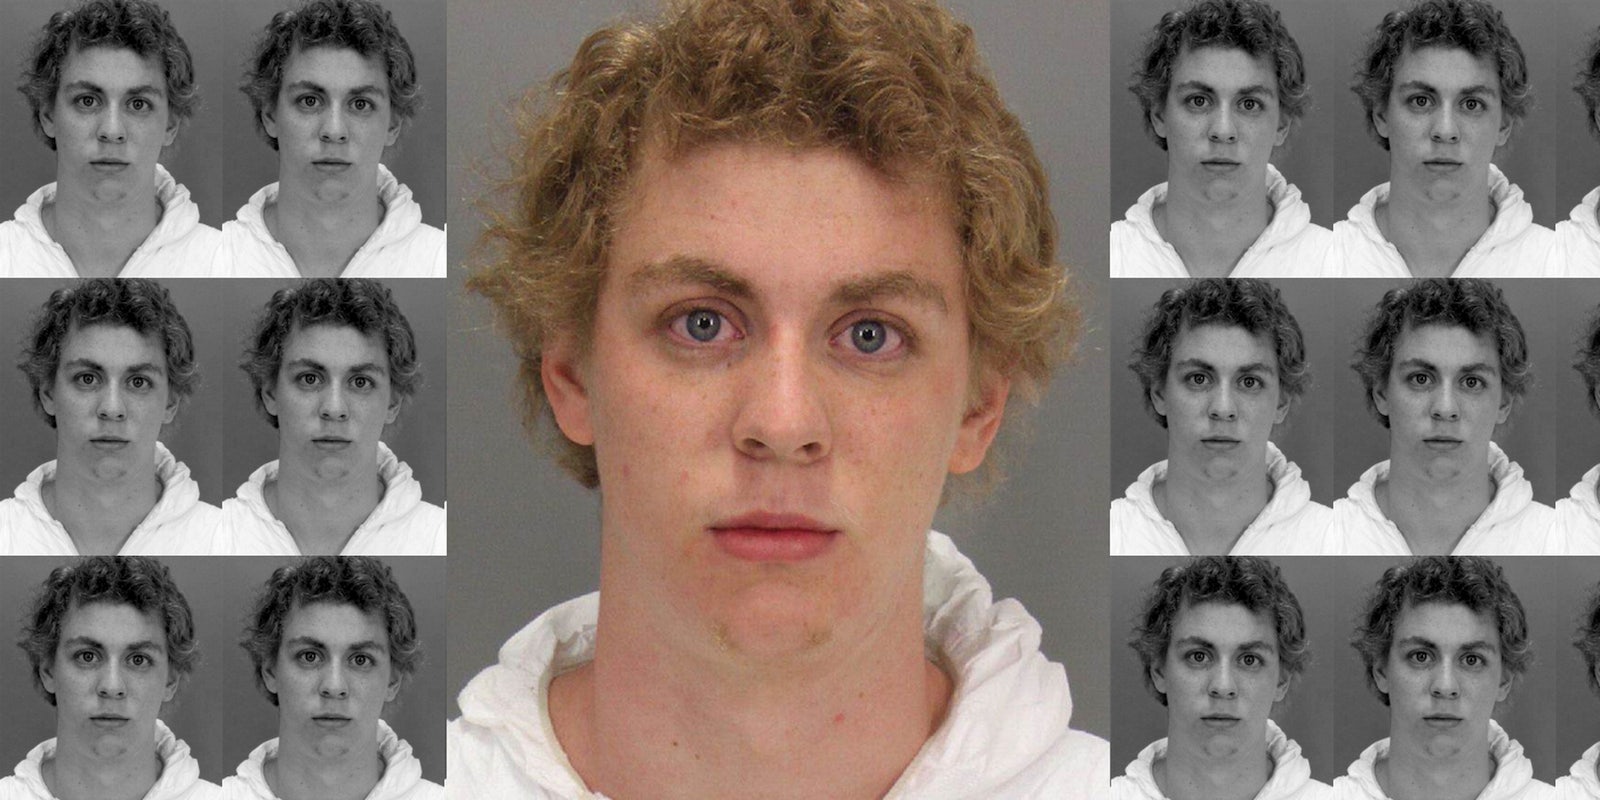 Convicted rapist Brock Turner